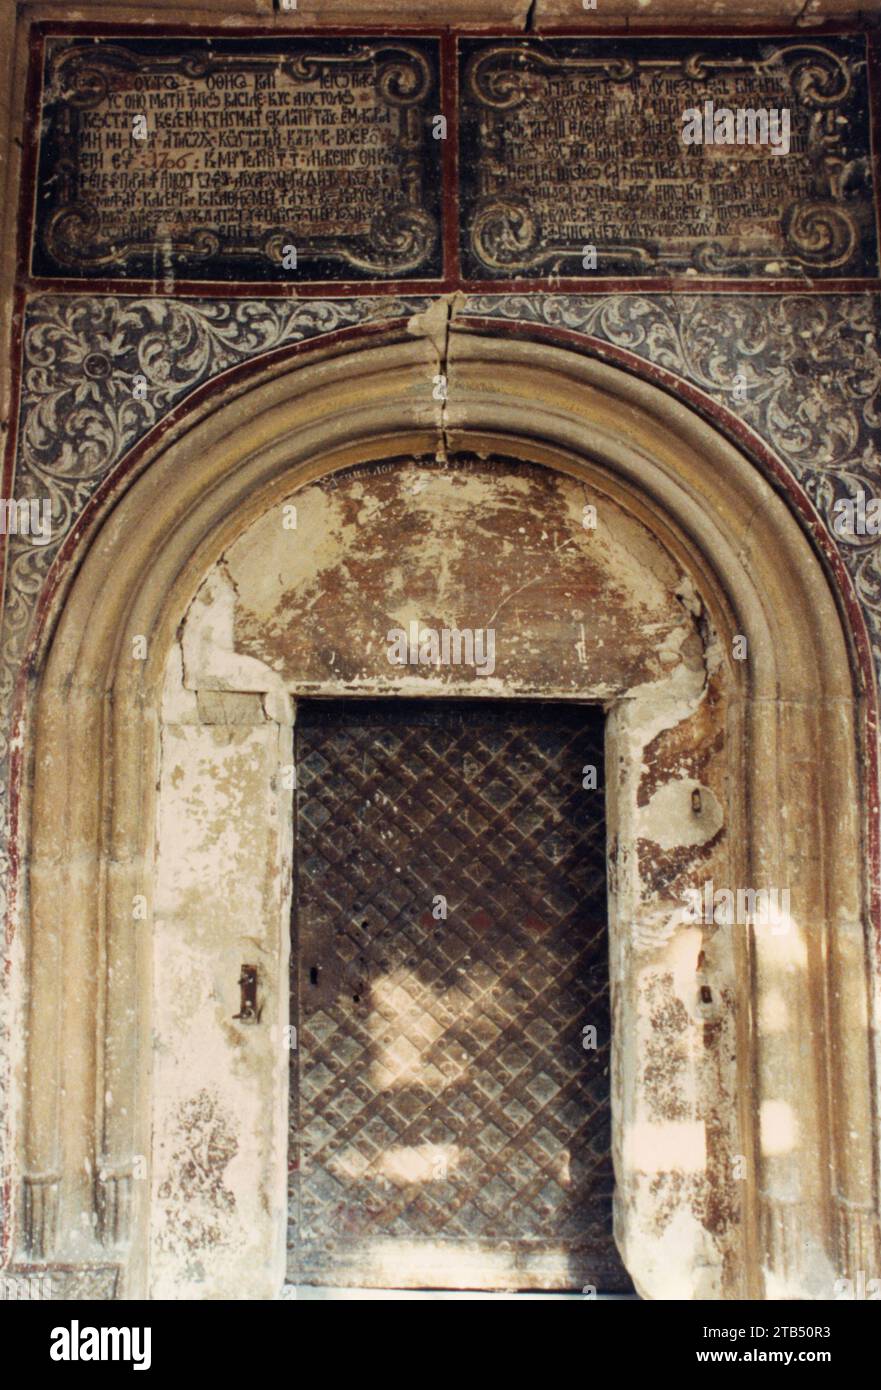 Vrancea County, Rumänien, ca. 1997. Kloster Mera, ein historisches Denkmal aus dem 17. Jahrhundert. Portal der Kirche mit der ursprünglichen Inschrift in zwei Sprachen (slawisch und griechisch). Stockfoto